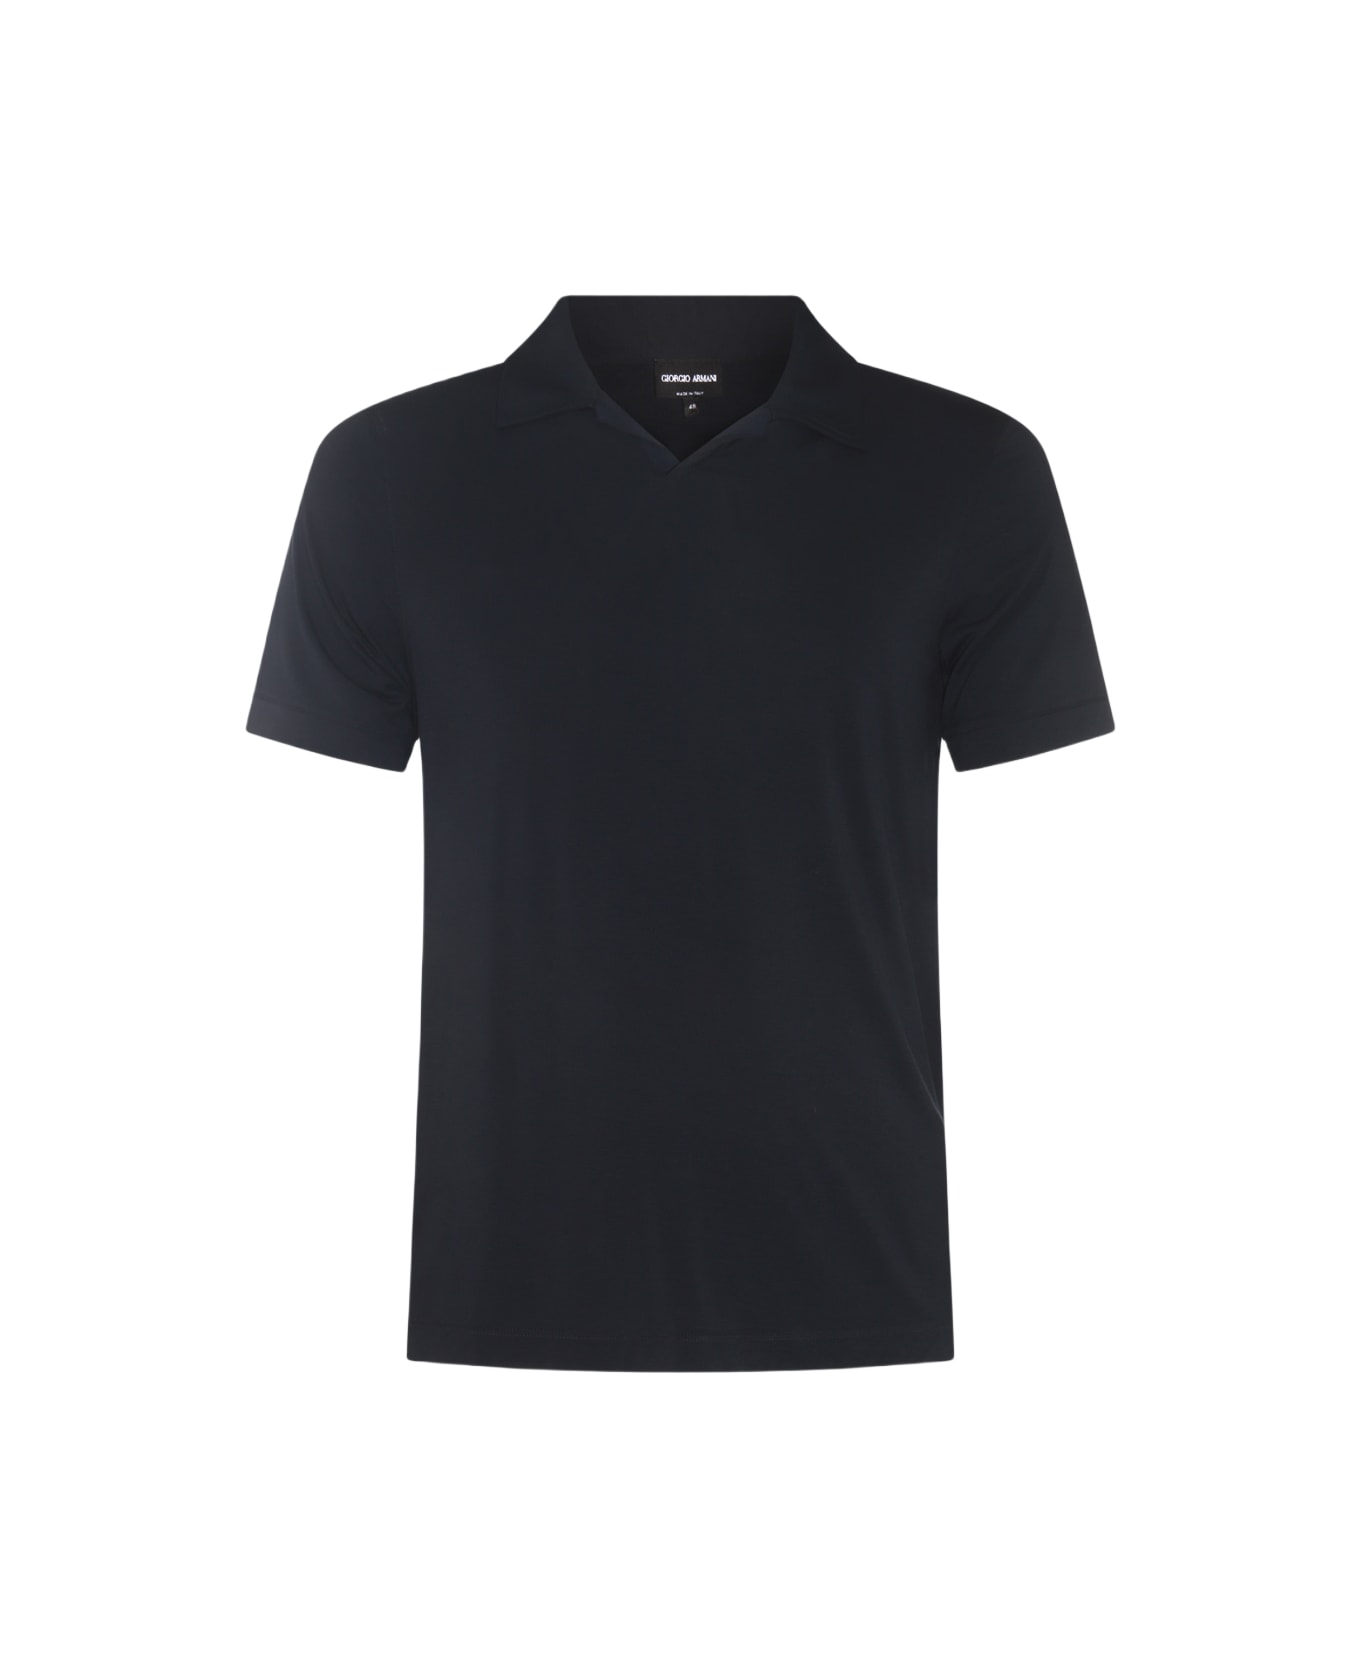 Giorgio Armani Black Viscose Polo Shirt ポロシャツ